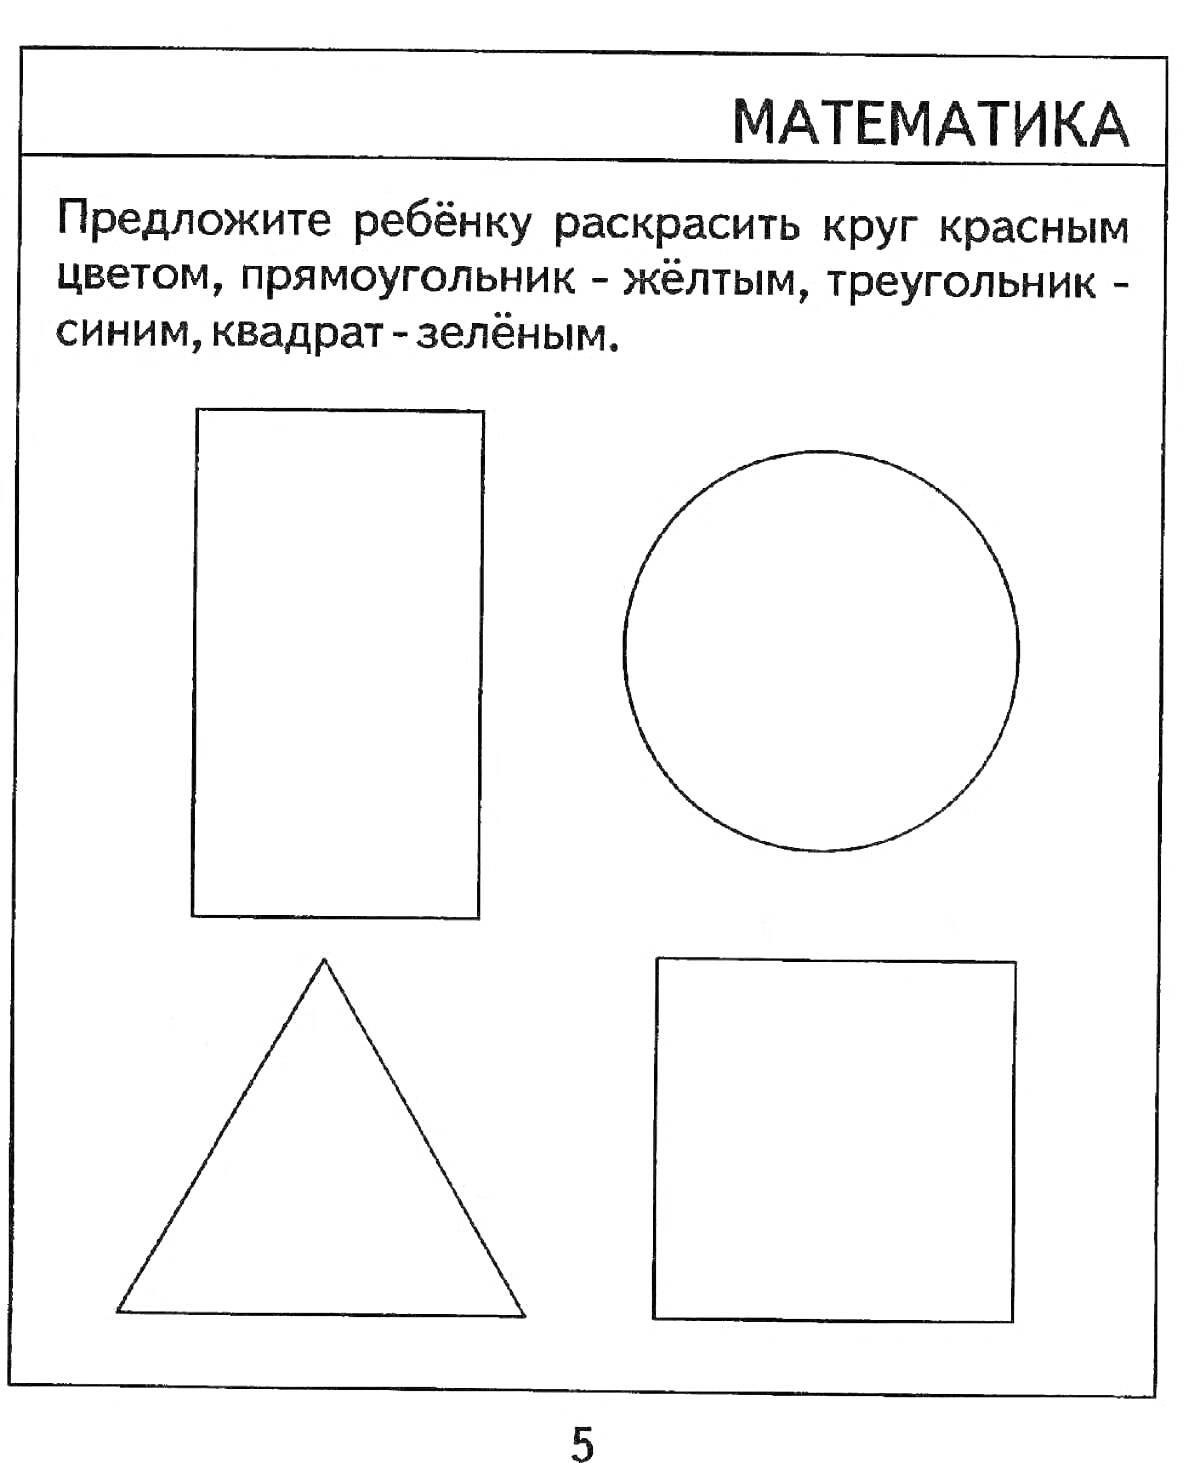 Раскраска Раскраска с фигурами: круг, прямоугольник, треугольник и квадрат